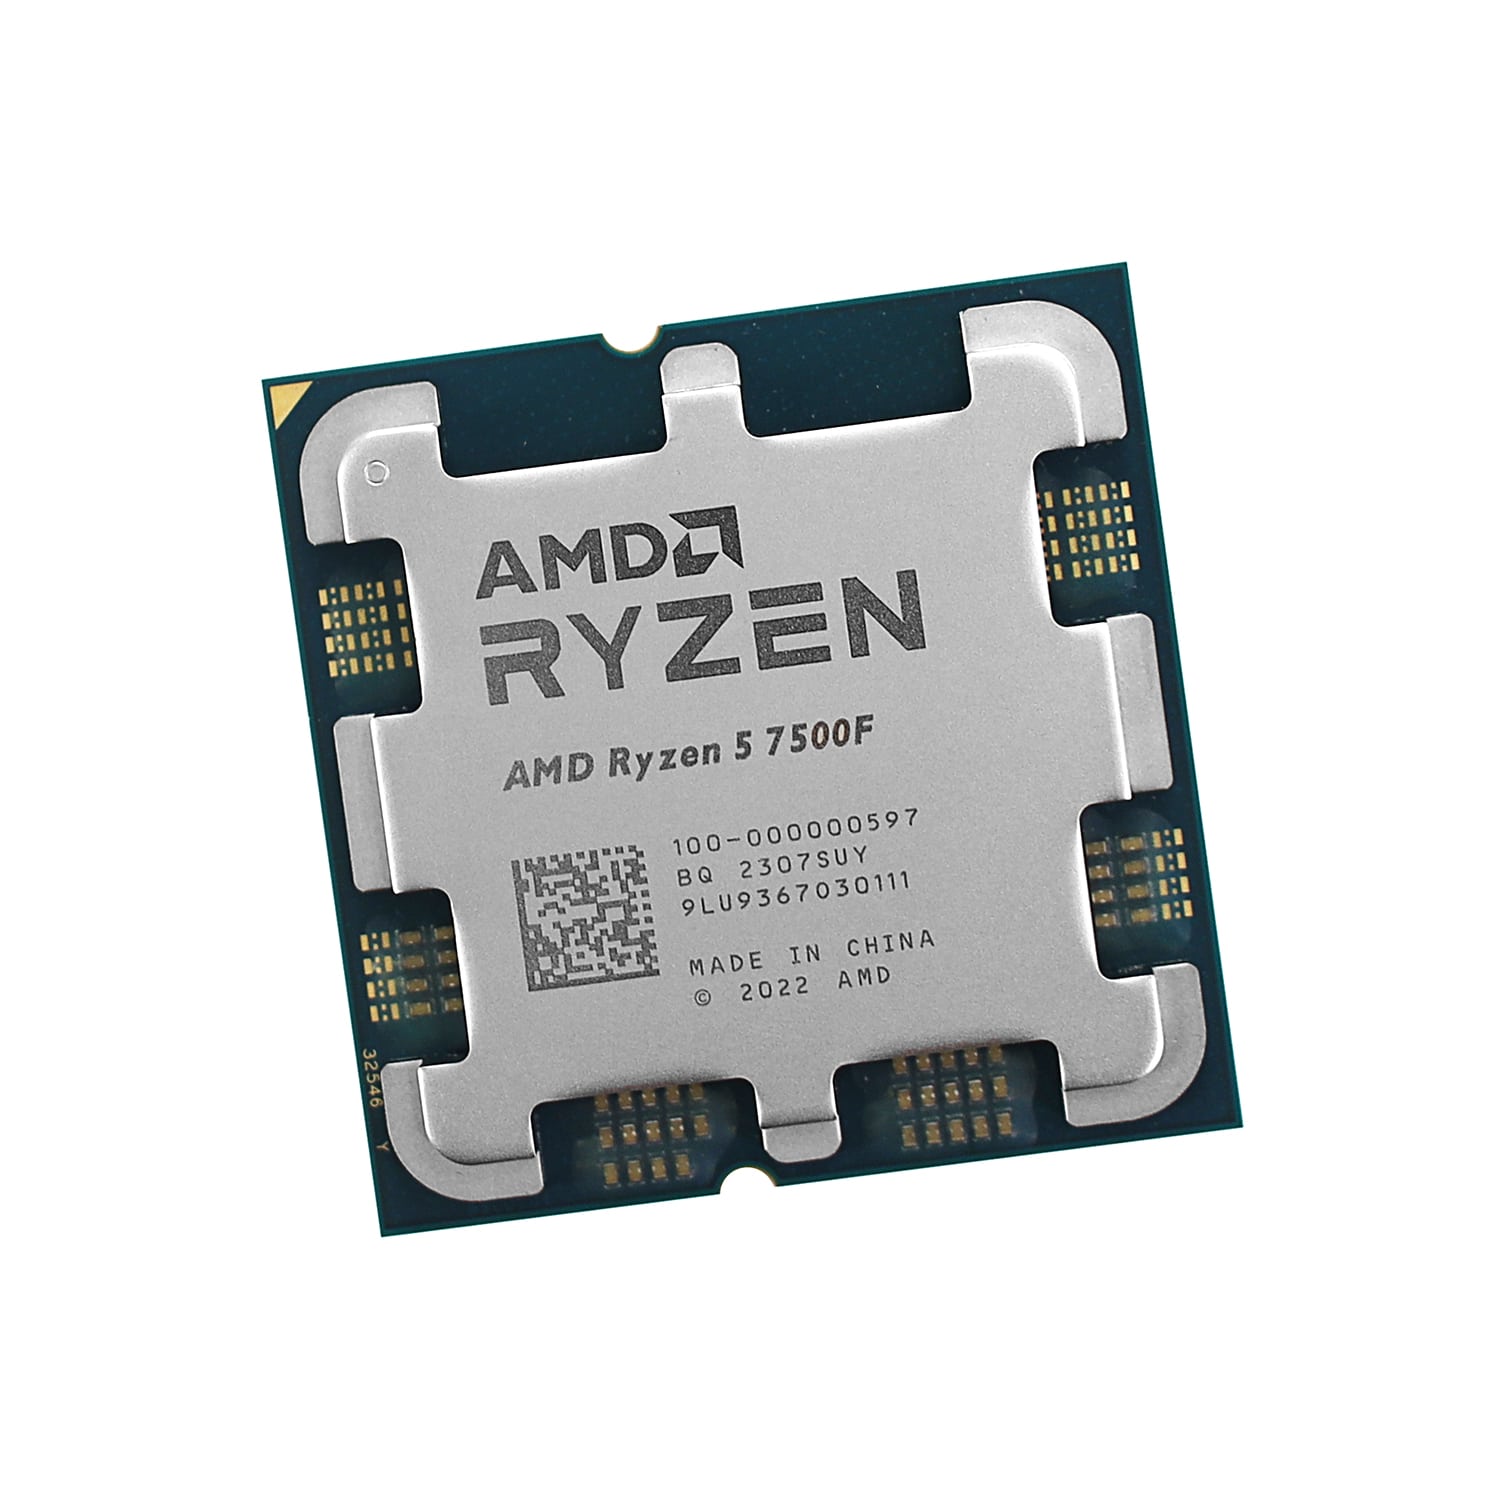  AMD Ryzen 5 7500F (100-000000597)